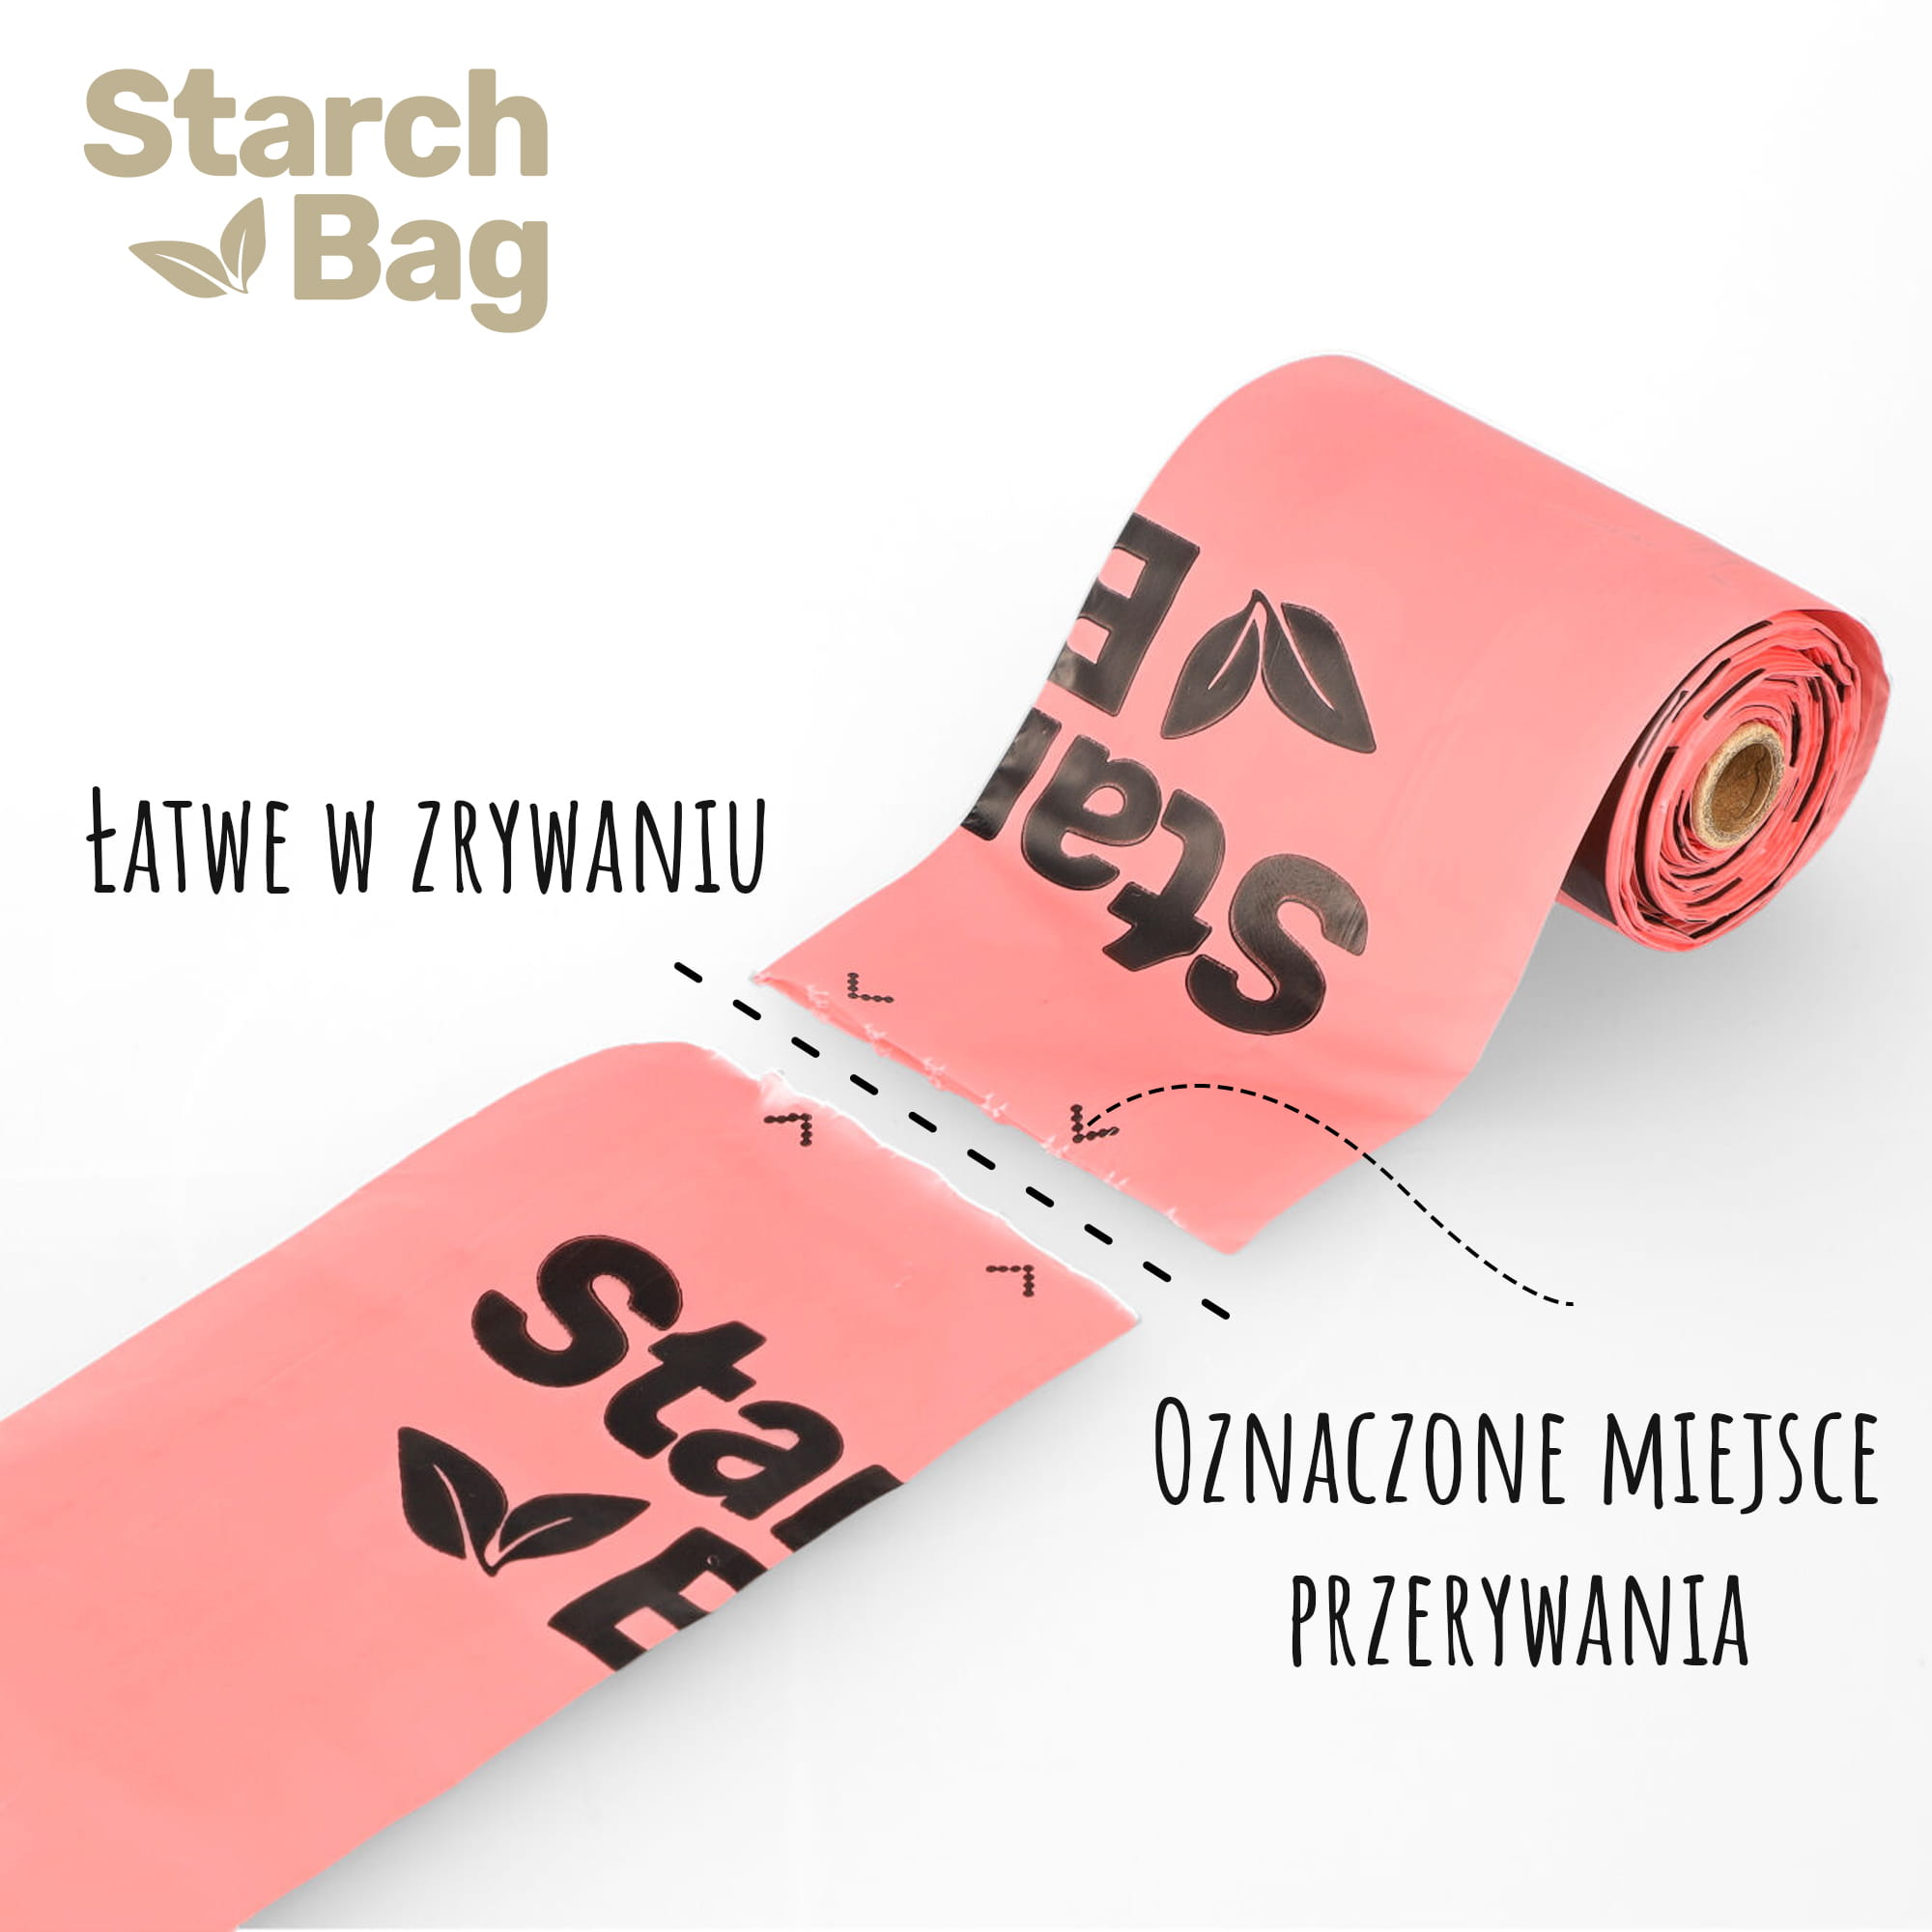 100% eco - friendly Poop bags - StarchBag image 3